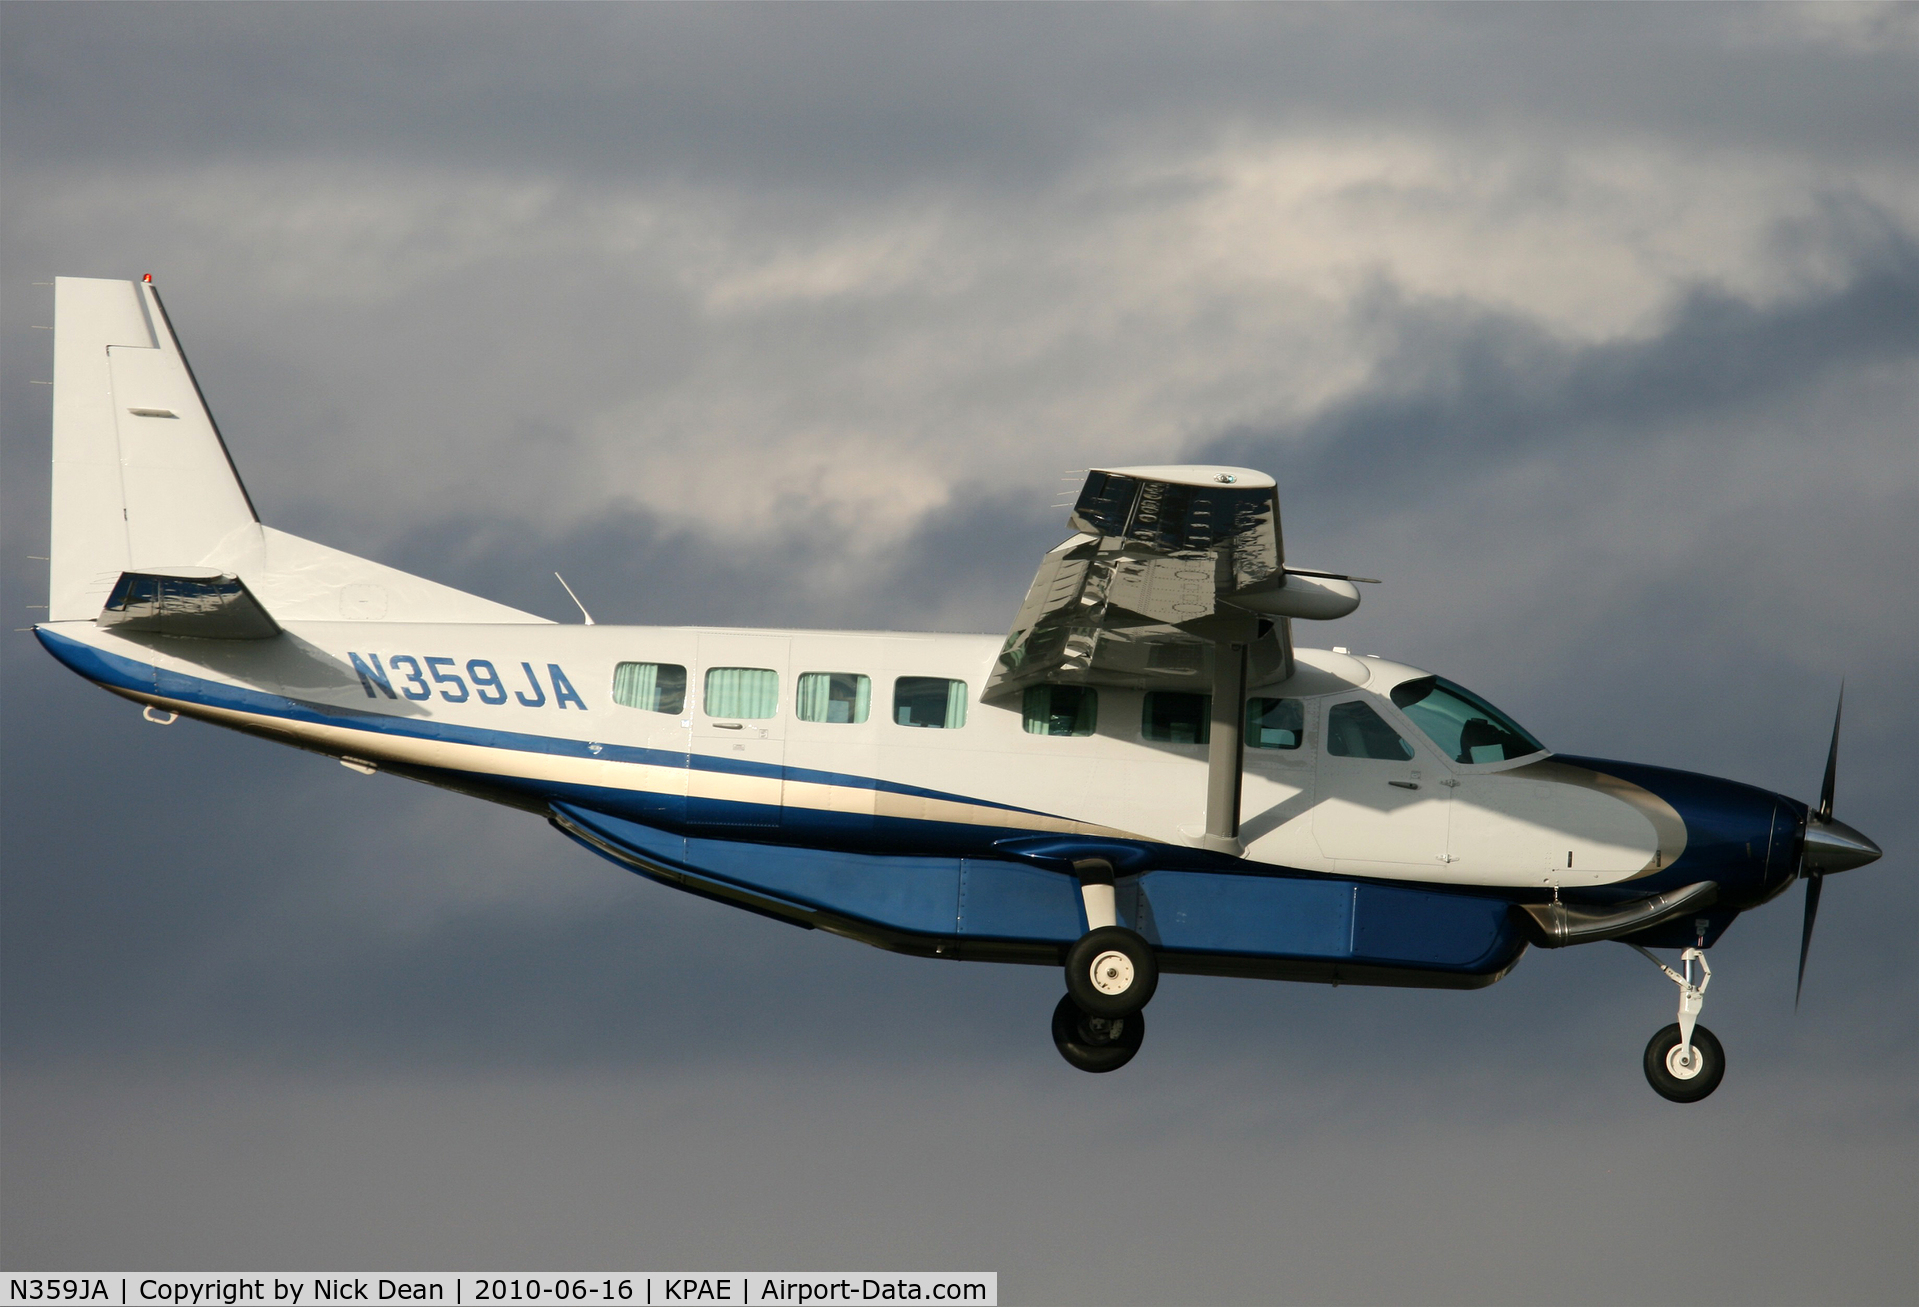 N359JA, 2008 Cessna 208B C/N 208B2010, KPAE